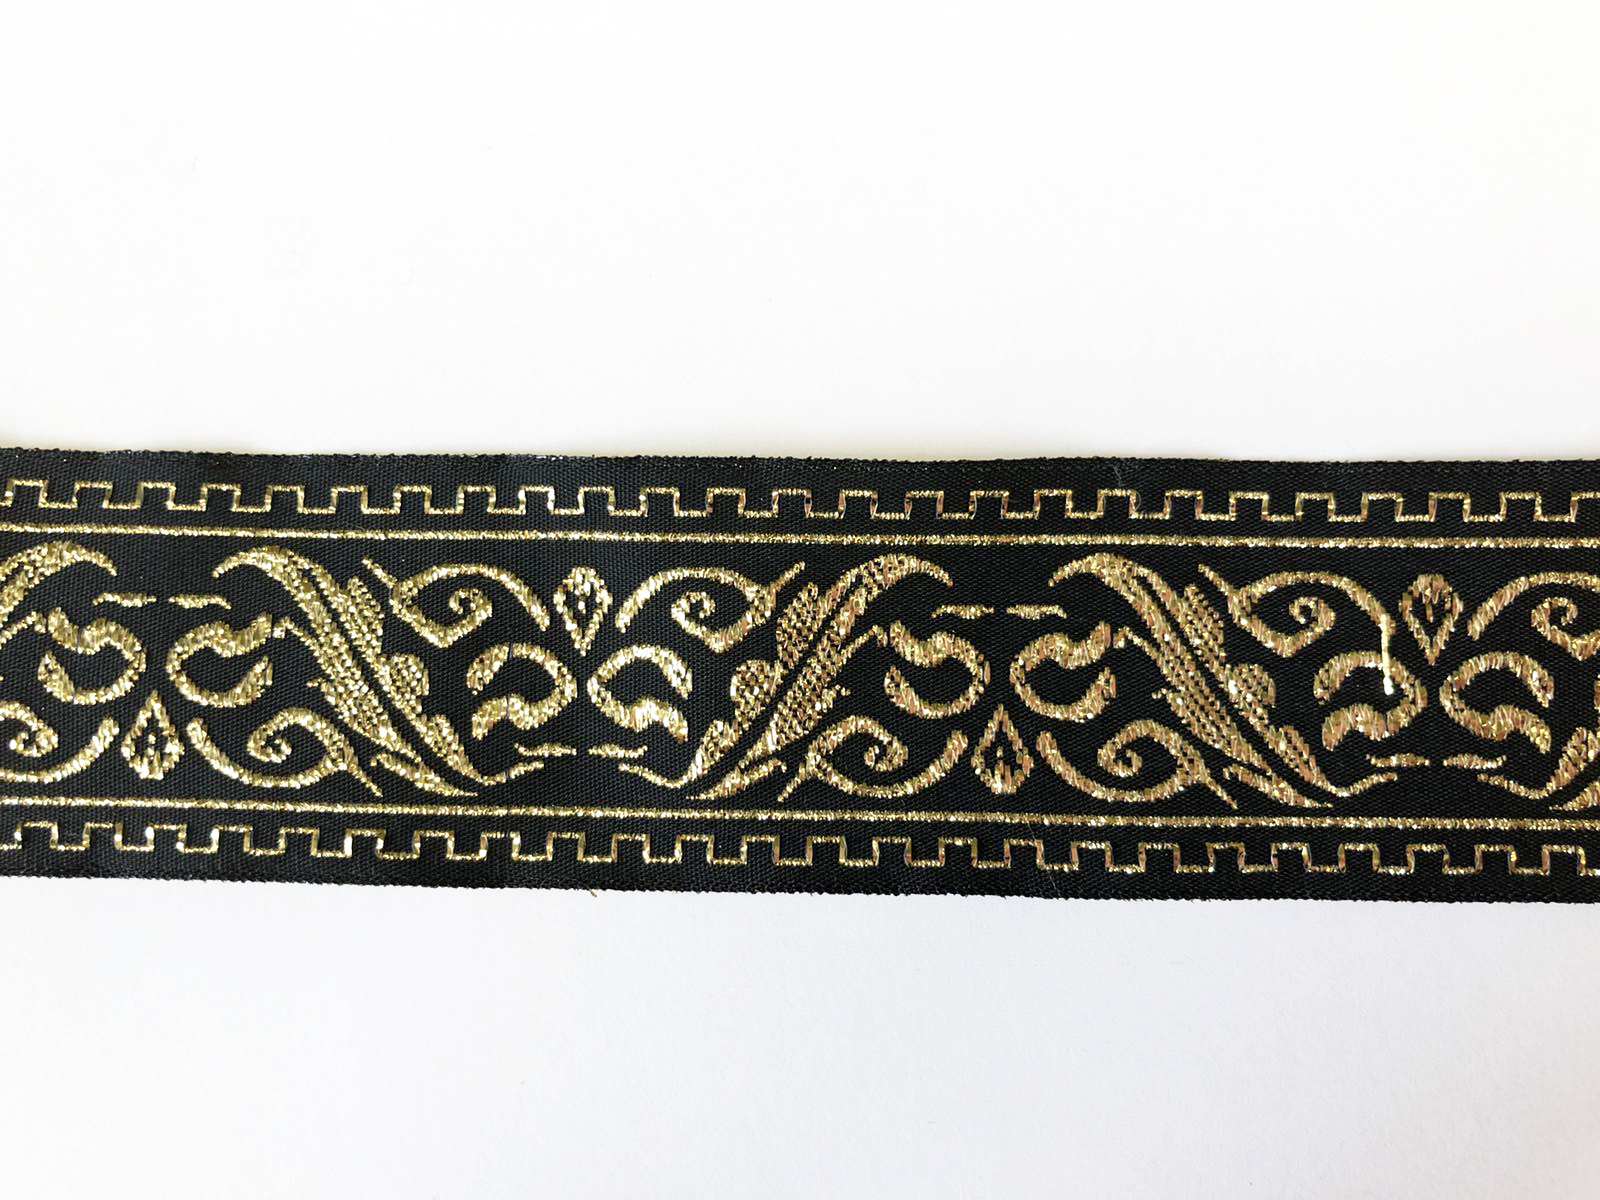 Тесьма декор. ЛЕСПРА широкая (ветка) 3,3см, черная, орнамент люрекс золото, 100м. Тесьма